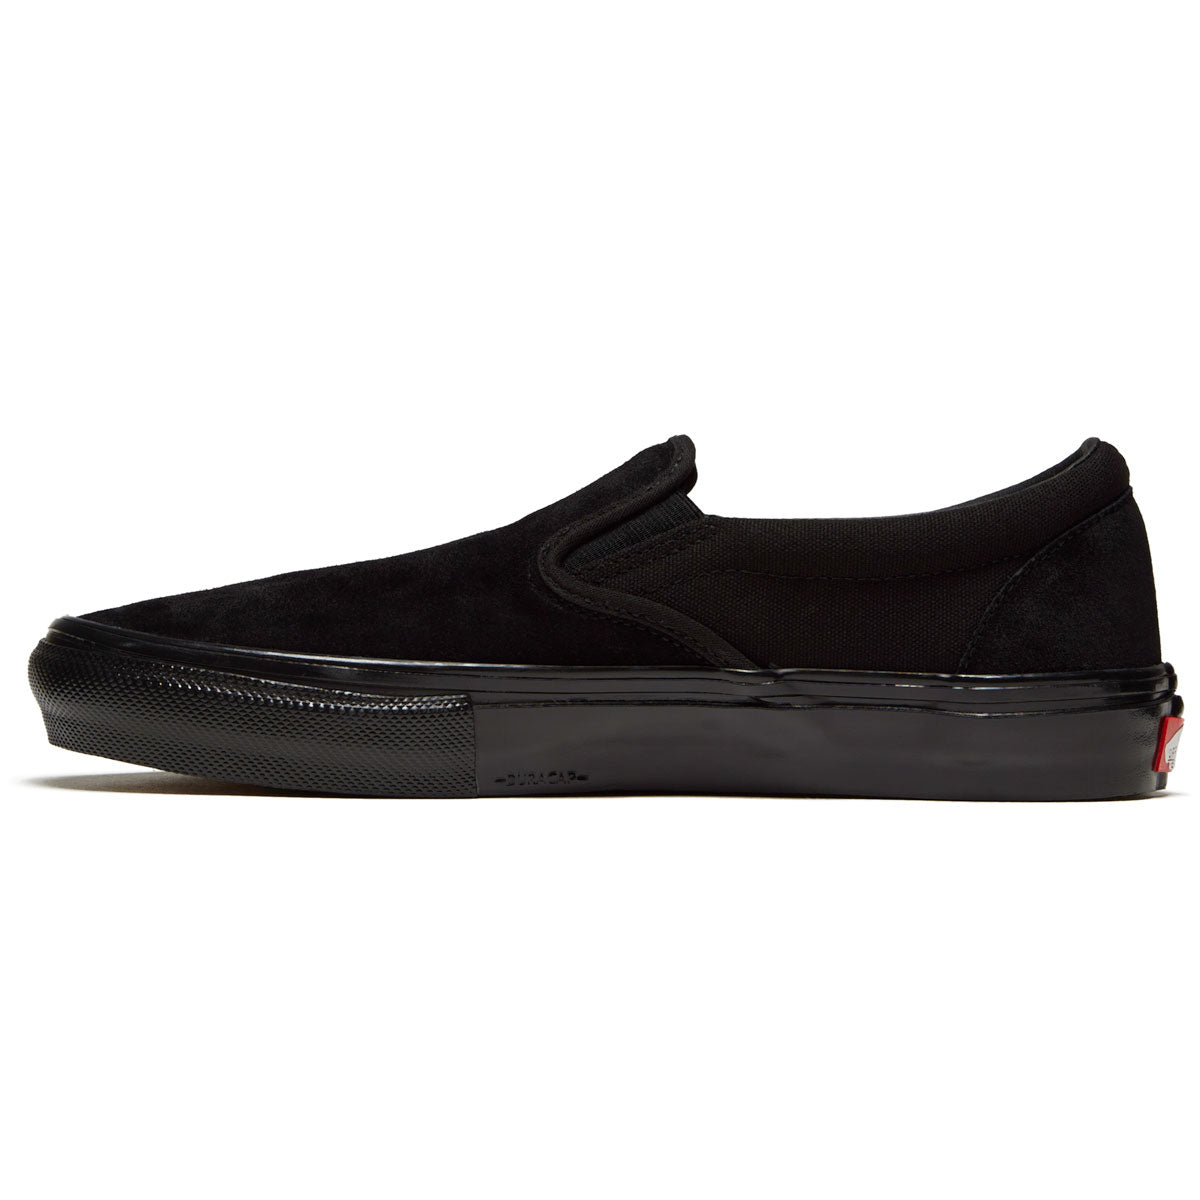 Vans Skate Slip-on Shoes - Black/Black image 2